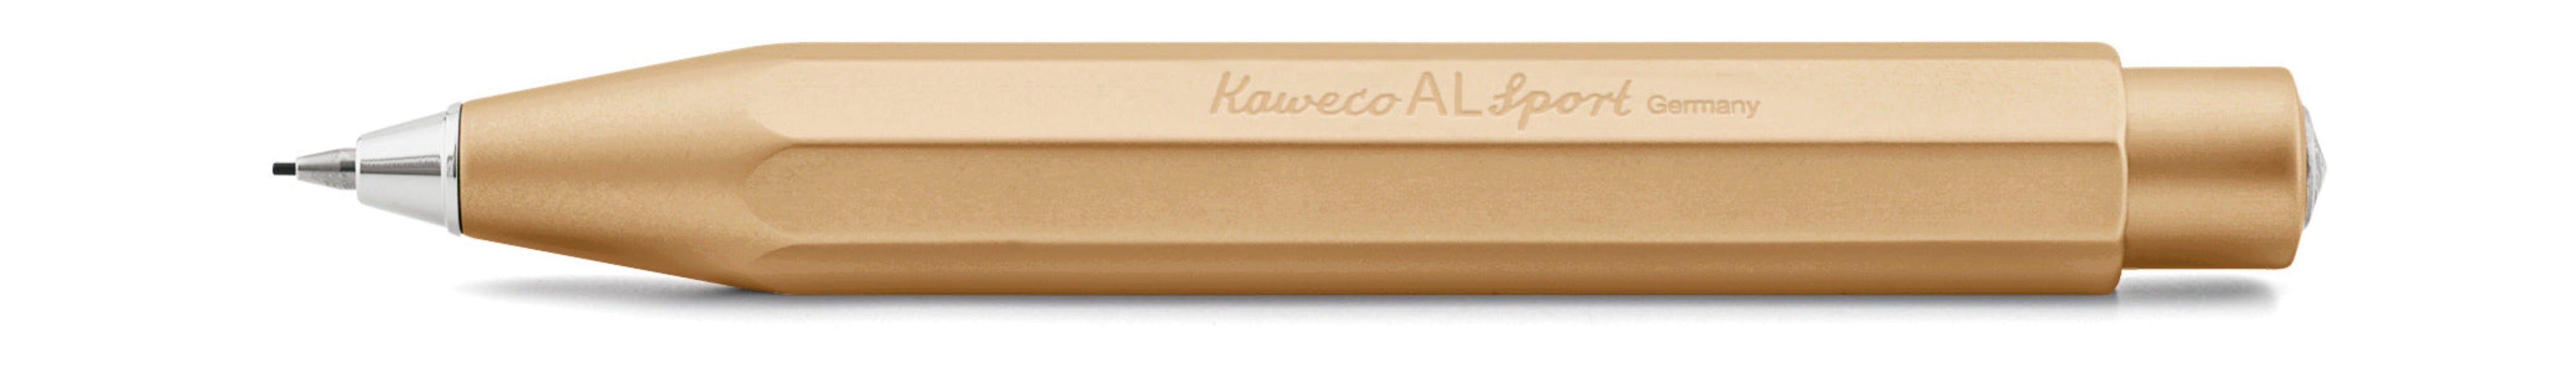 KAWECO AL Sport Special Edition GOLD Push Pencil